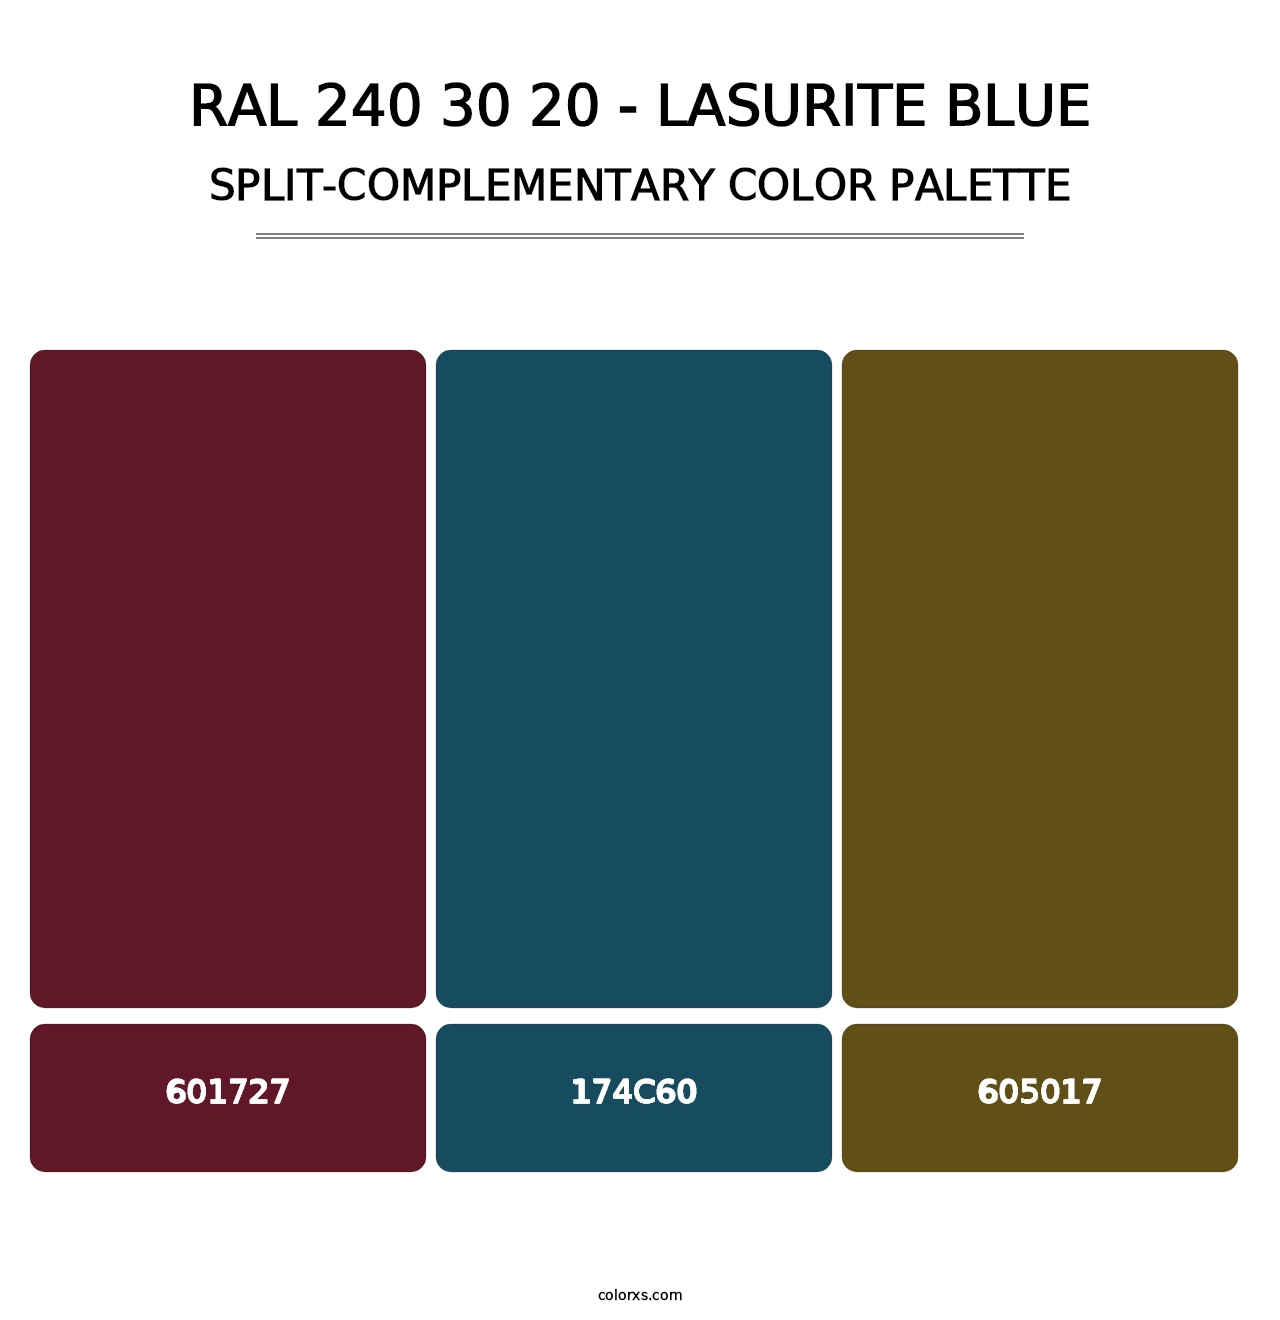 RAL 240 30 20 - Lasurite Blue - Split-Complementary Color Palette